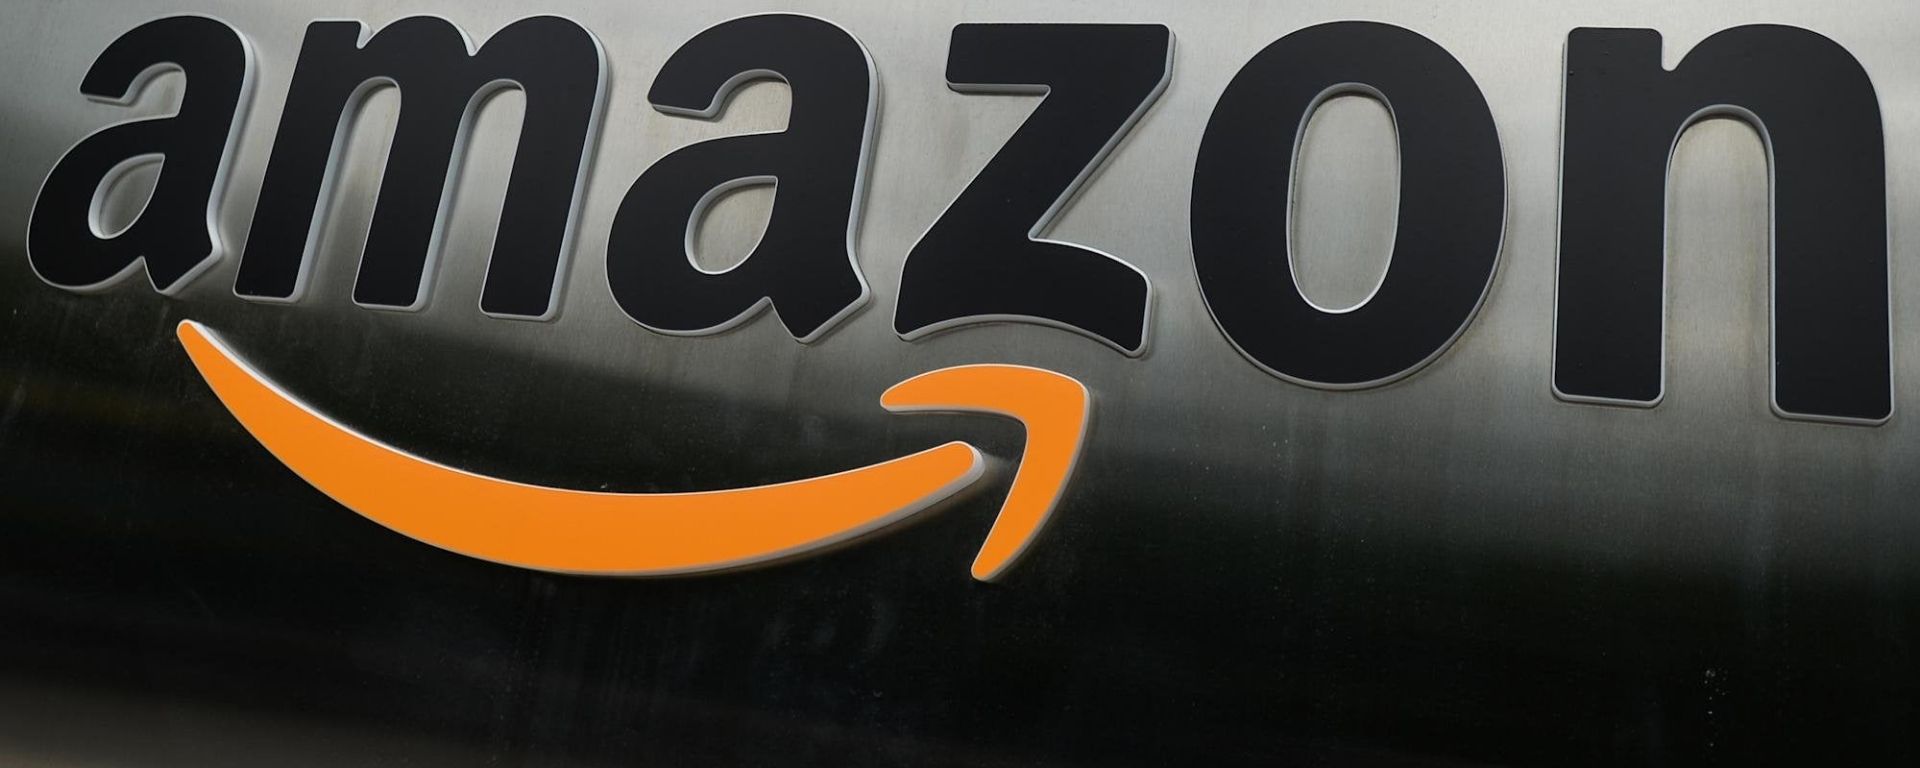 Cardano e Amazon em uma parceria?